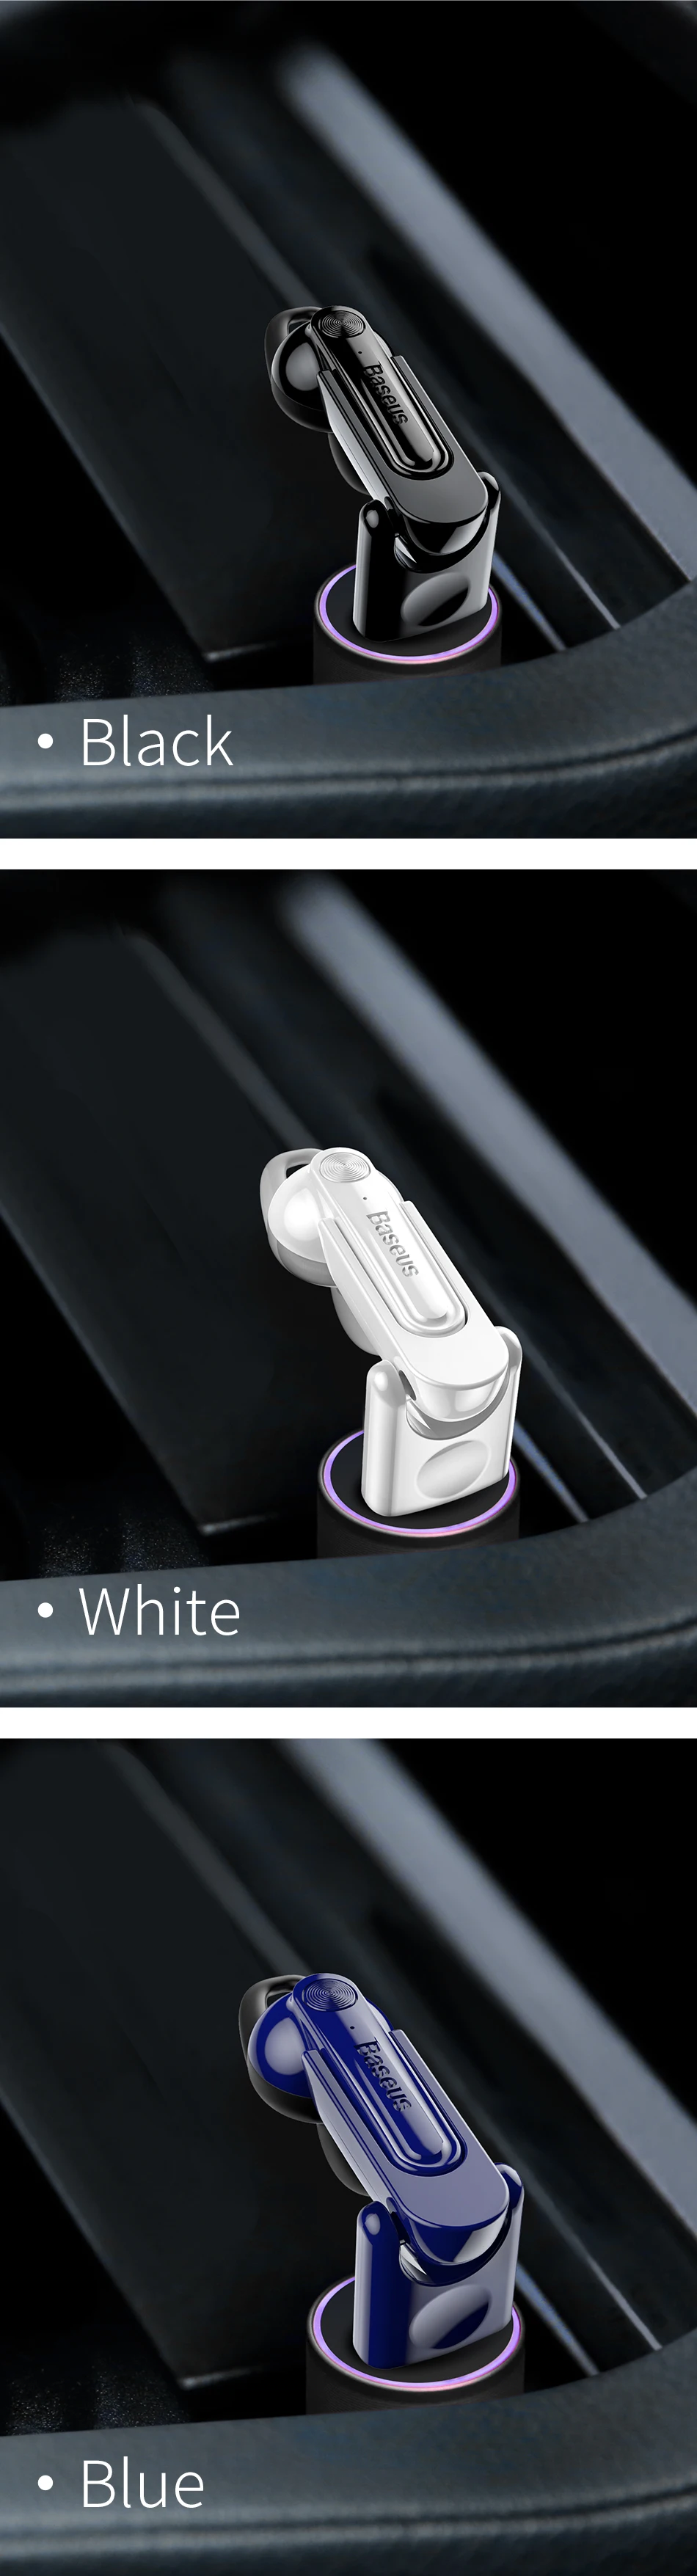 Baseus мини беспроводные Bluetooth наушники с магнитной зарядкой Bluetooth гарнитуры вкладыши громкой связи с микрофоном для iPhone samsung в автомобиле